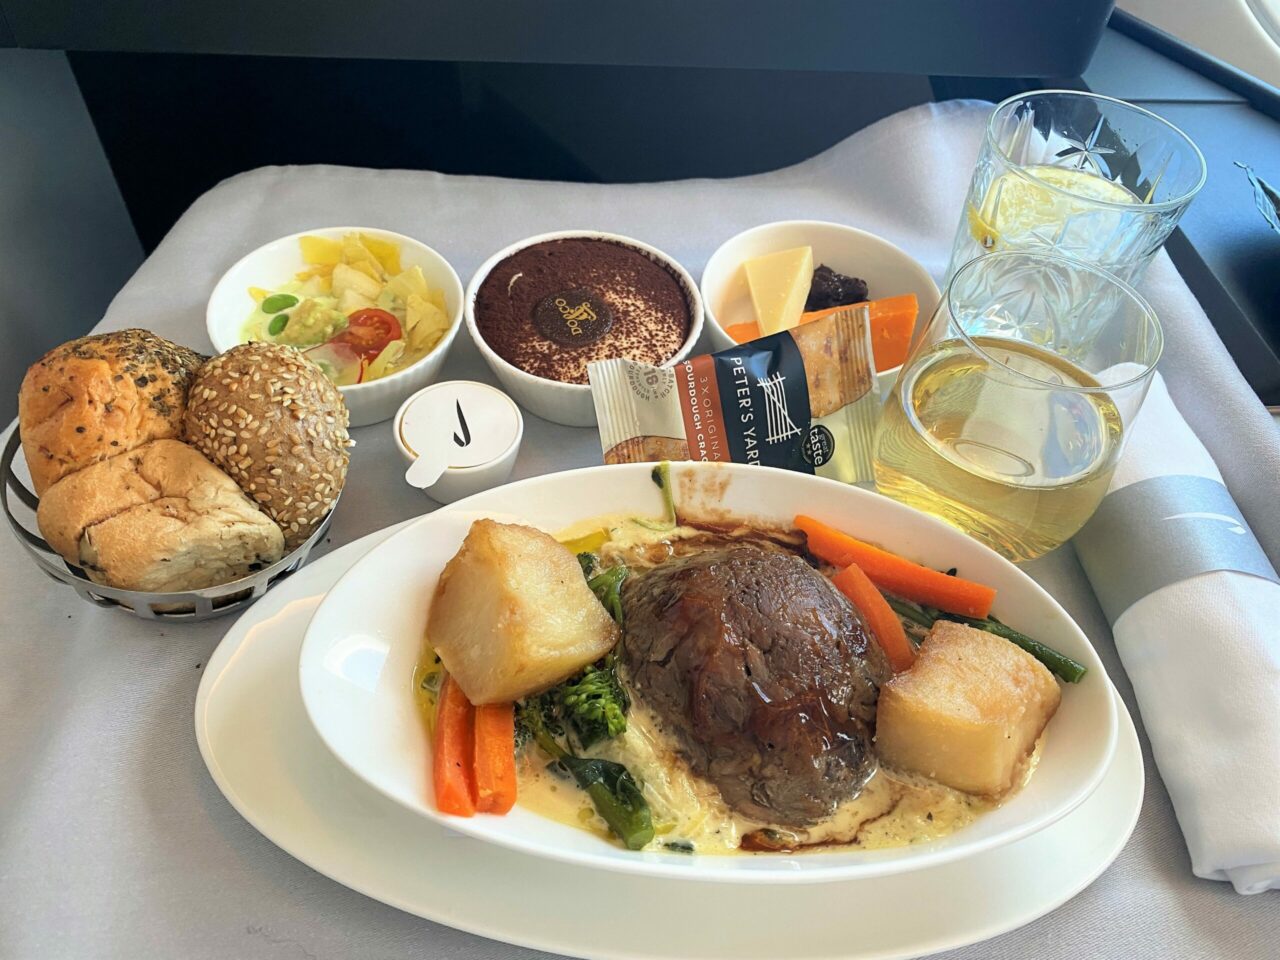 British Airways A350 Club Suite avocado salad 